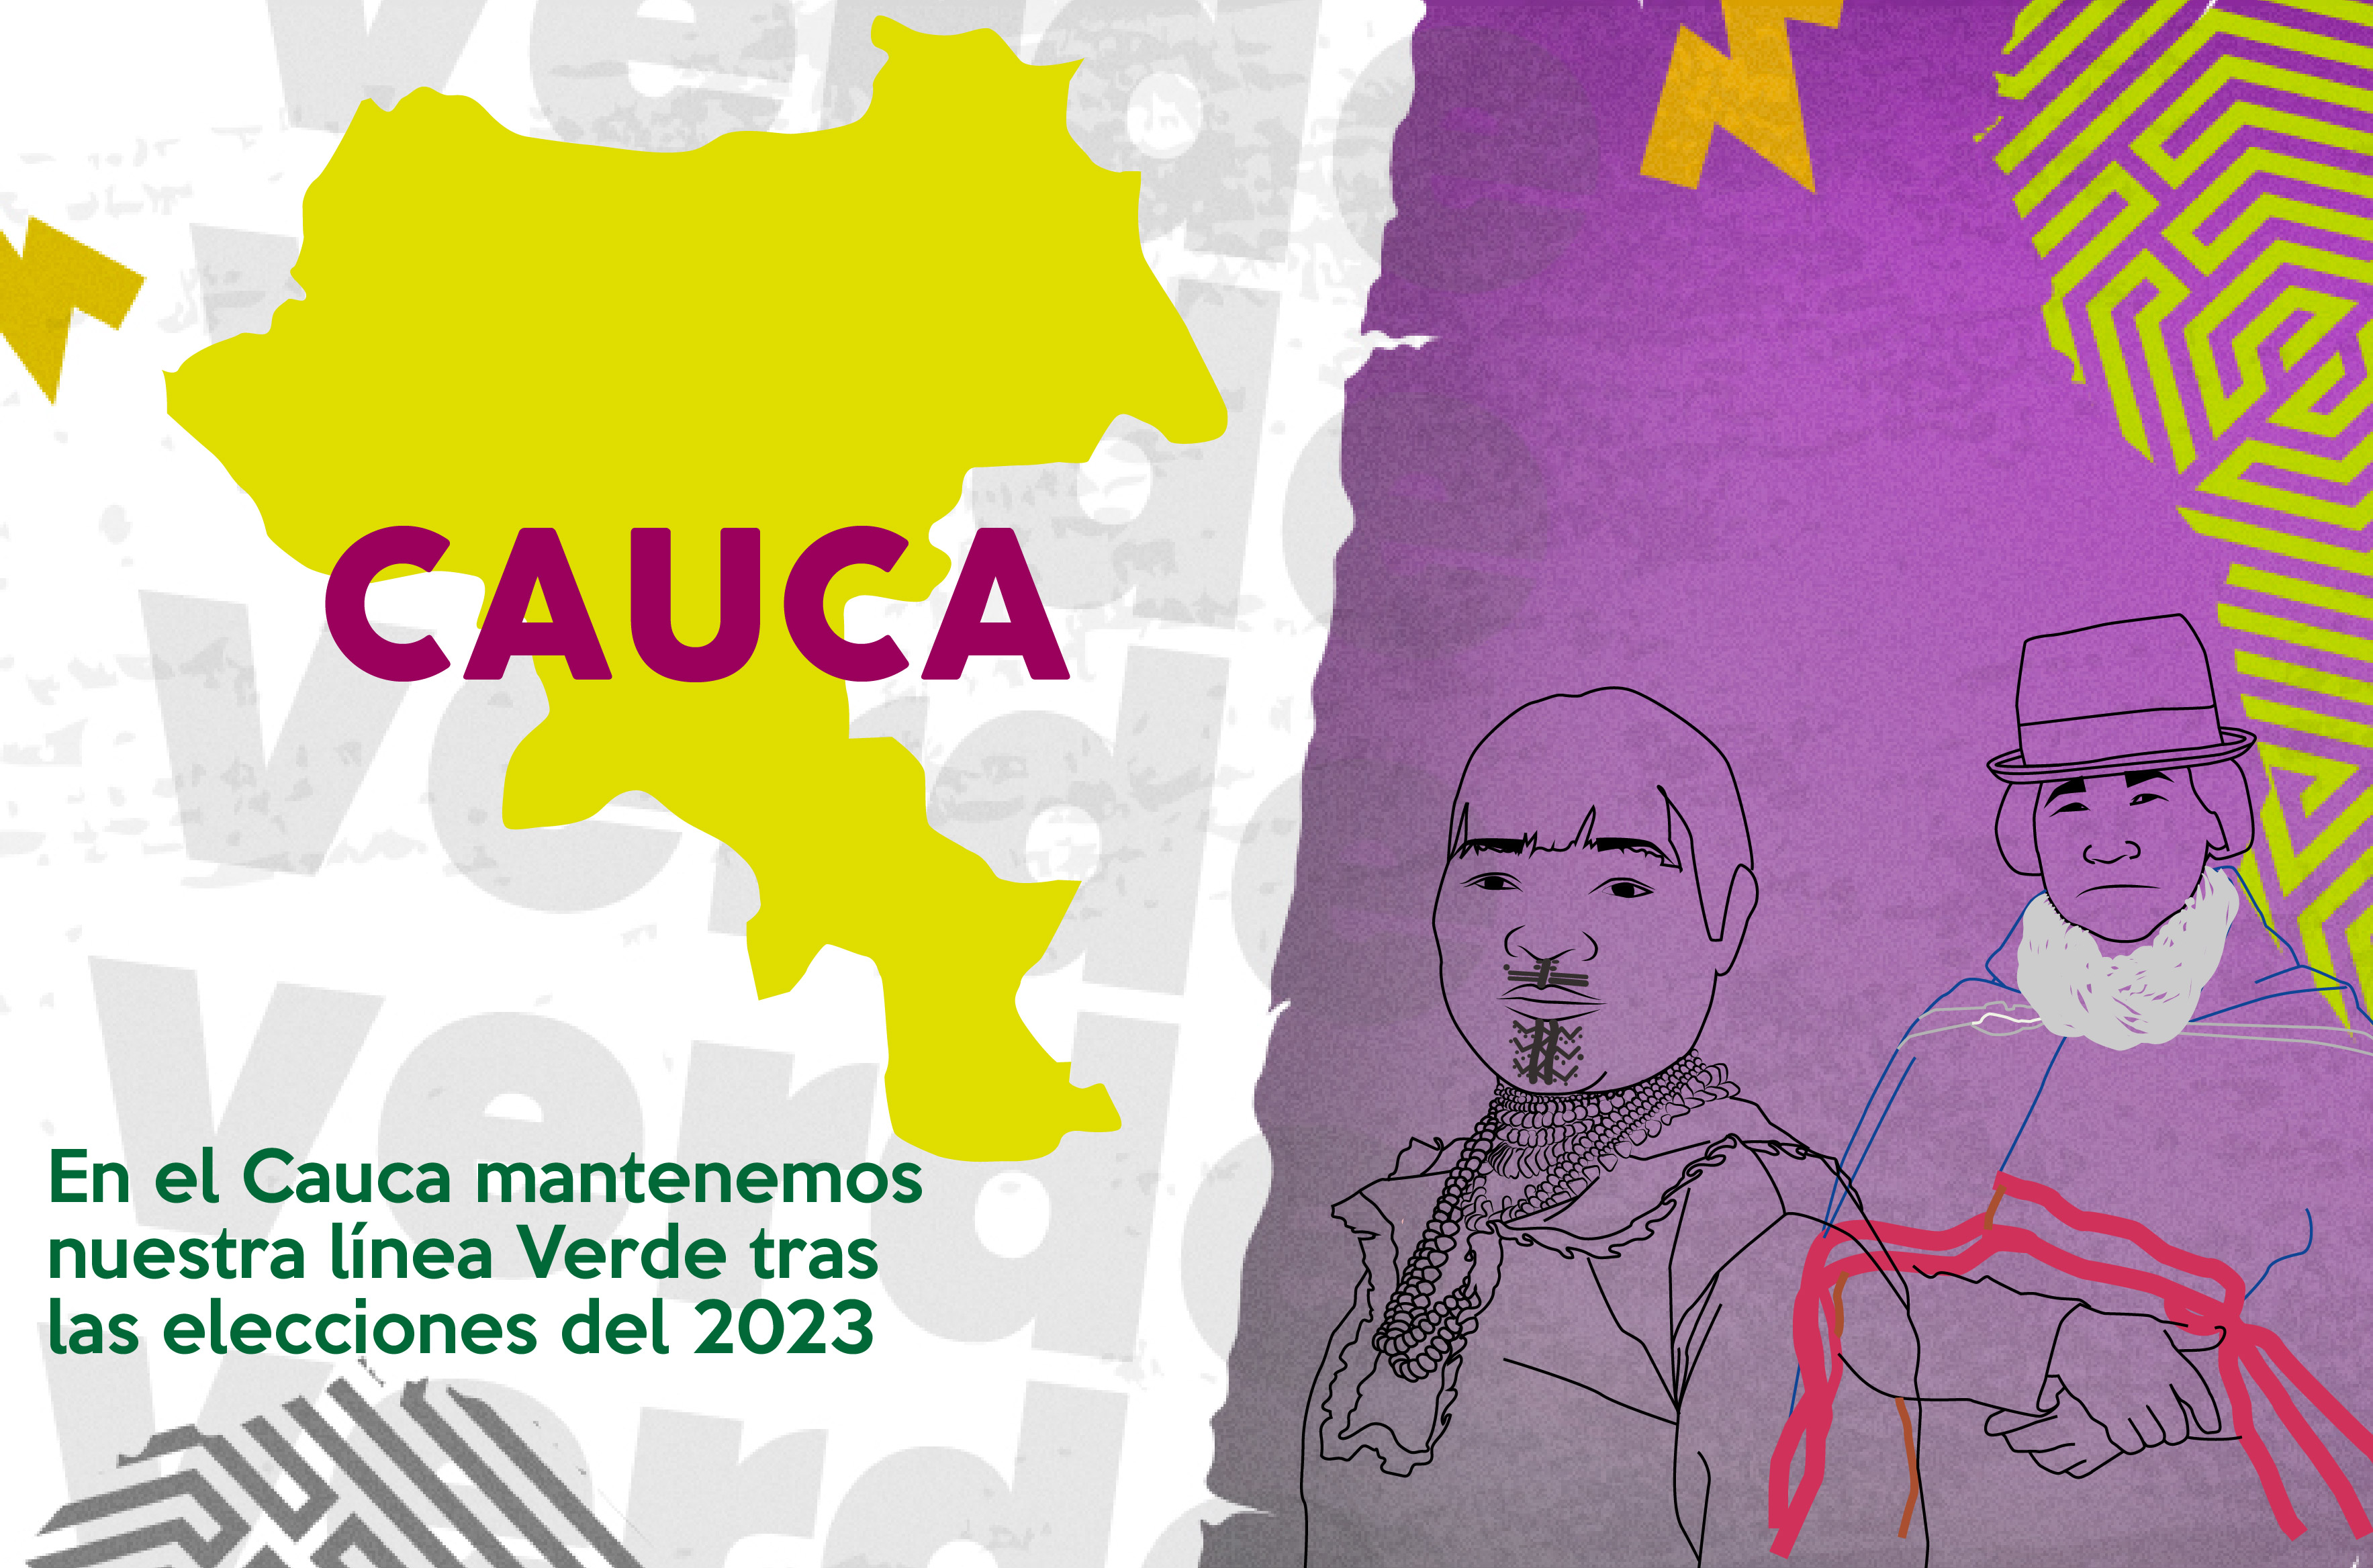 En el Cauca mantenemos nuestra línea Verde tras las elecciones del 2023